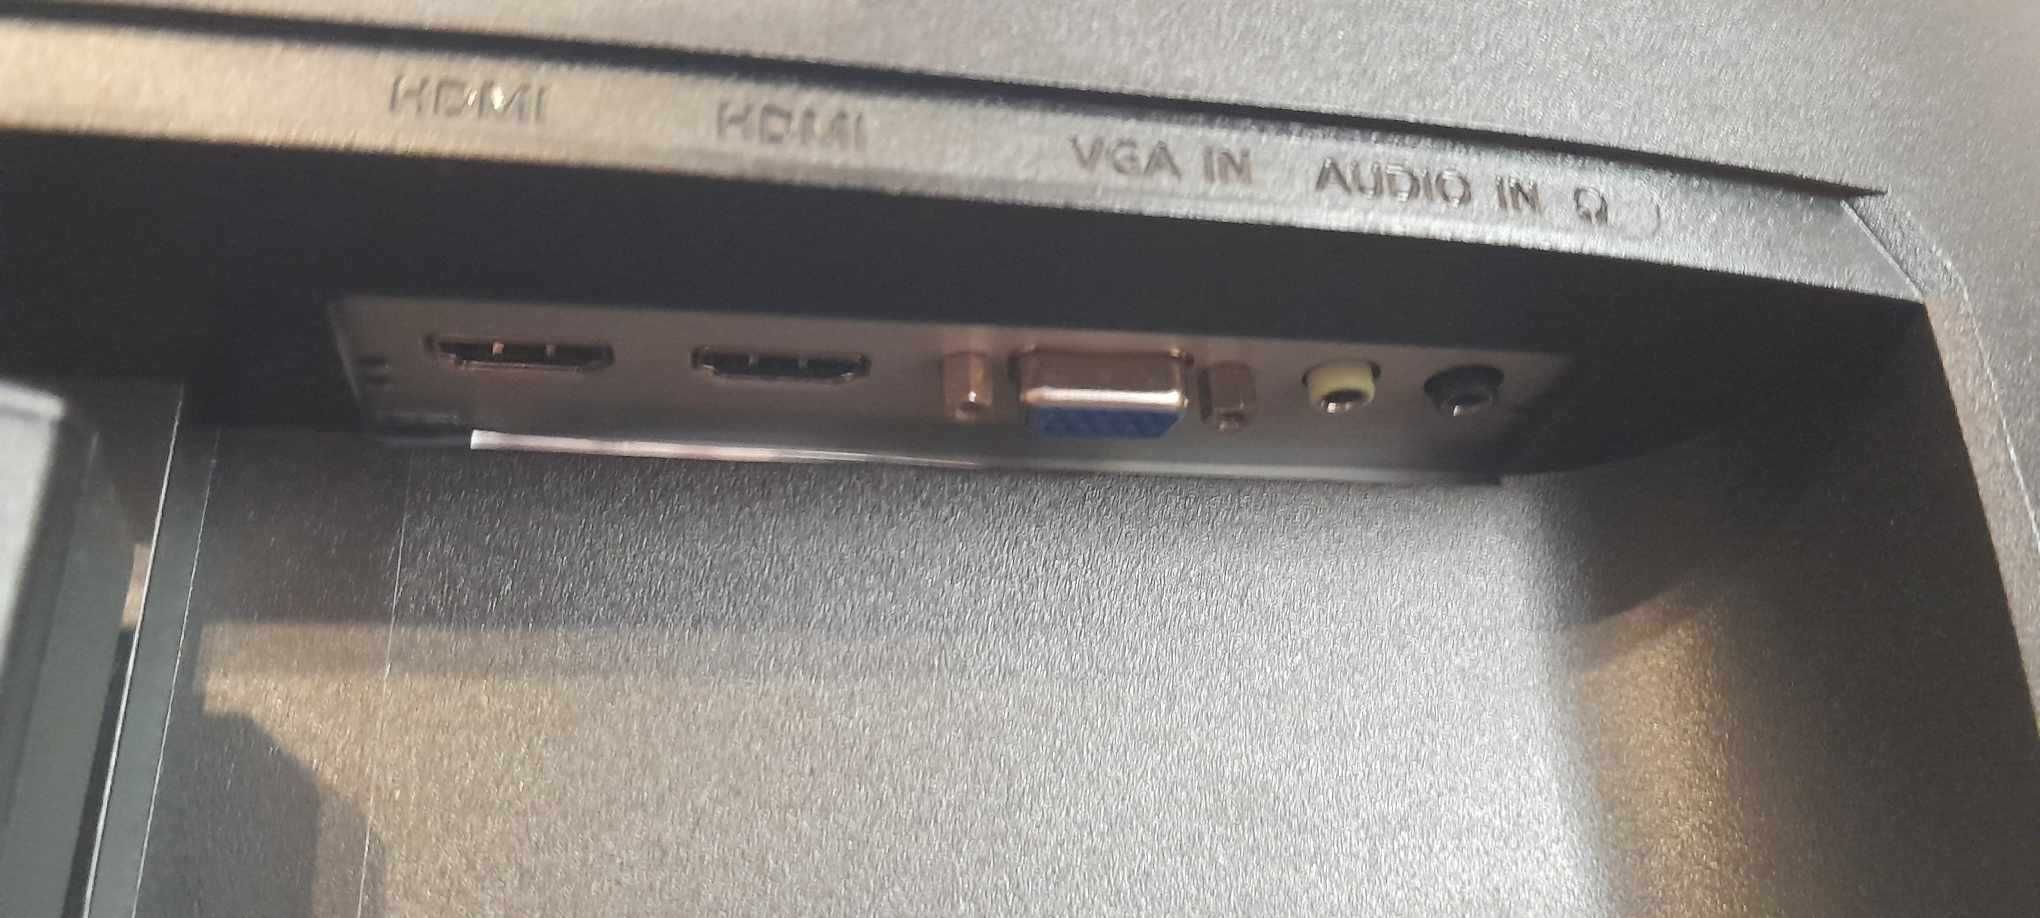 Monitor Acer Nitro VGO Series 23,8'' 60 Hz Gaming